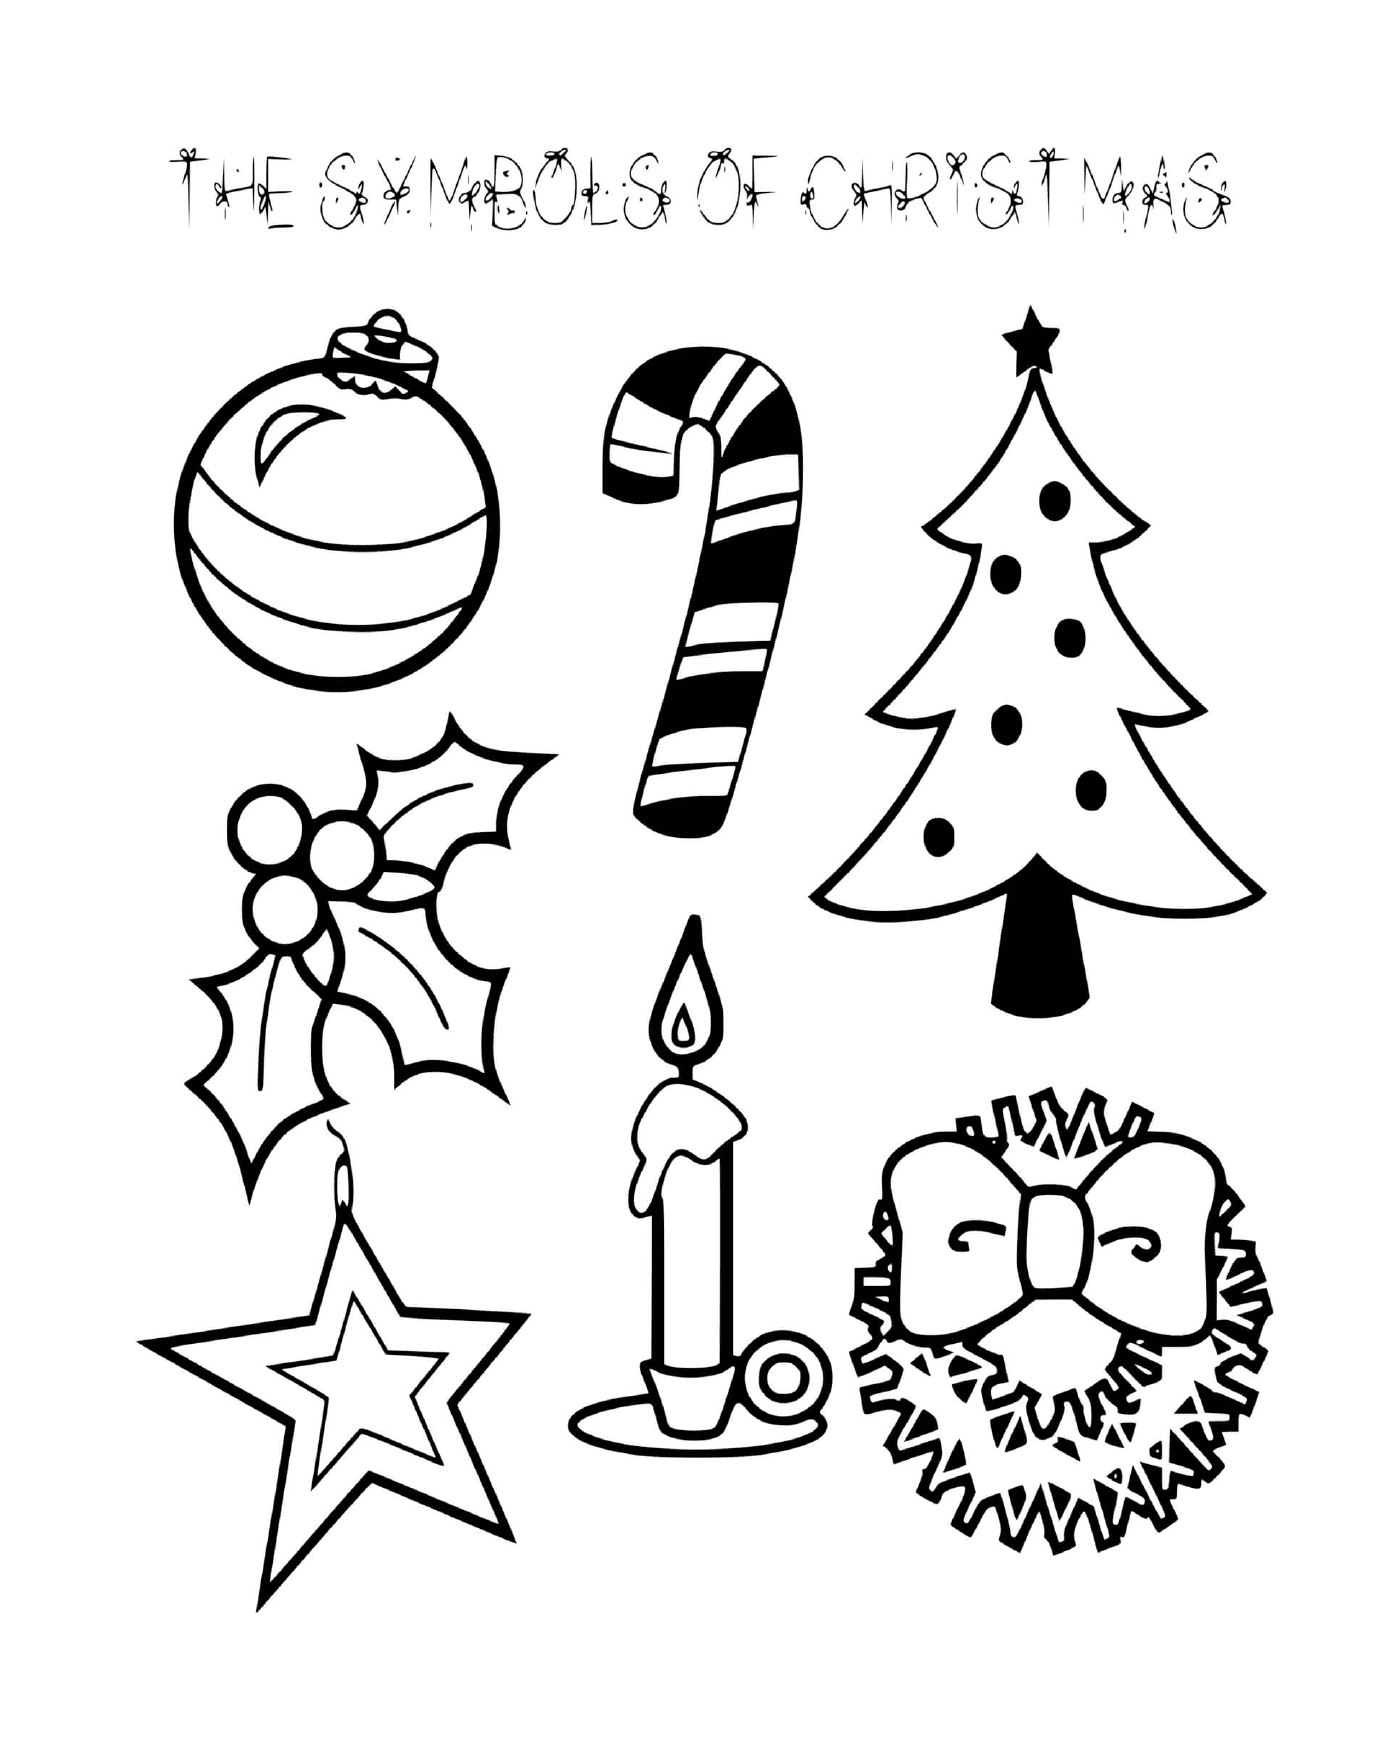  Semplici simboli natalizi per bambini in inverno 